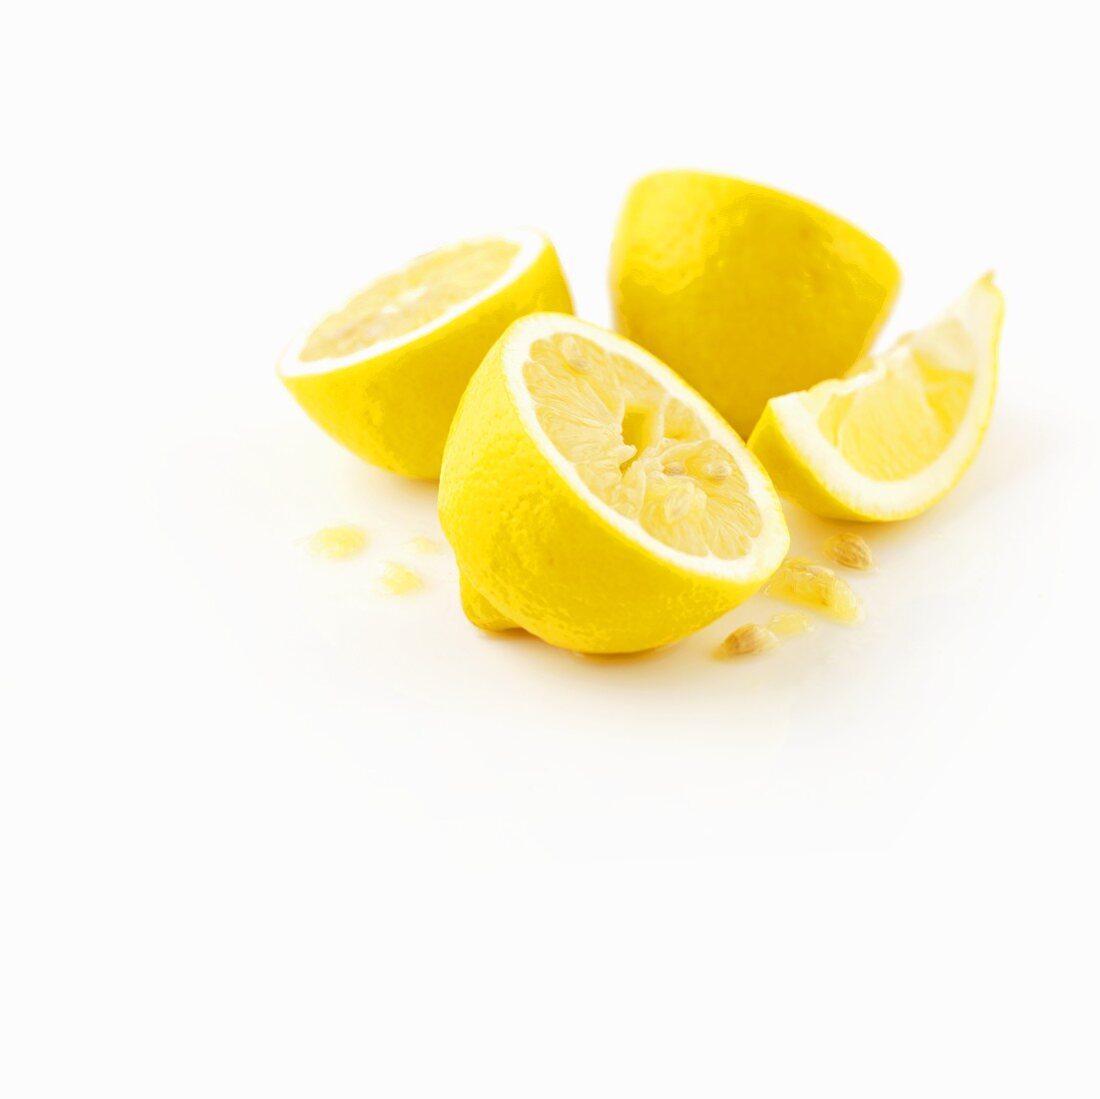 Lemon halves and a wedge of lemon